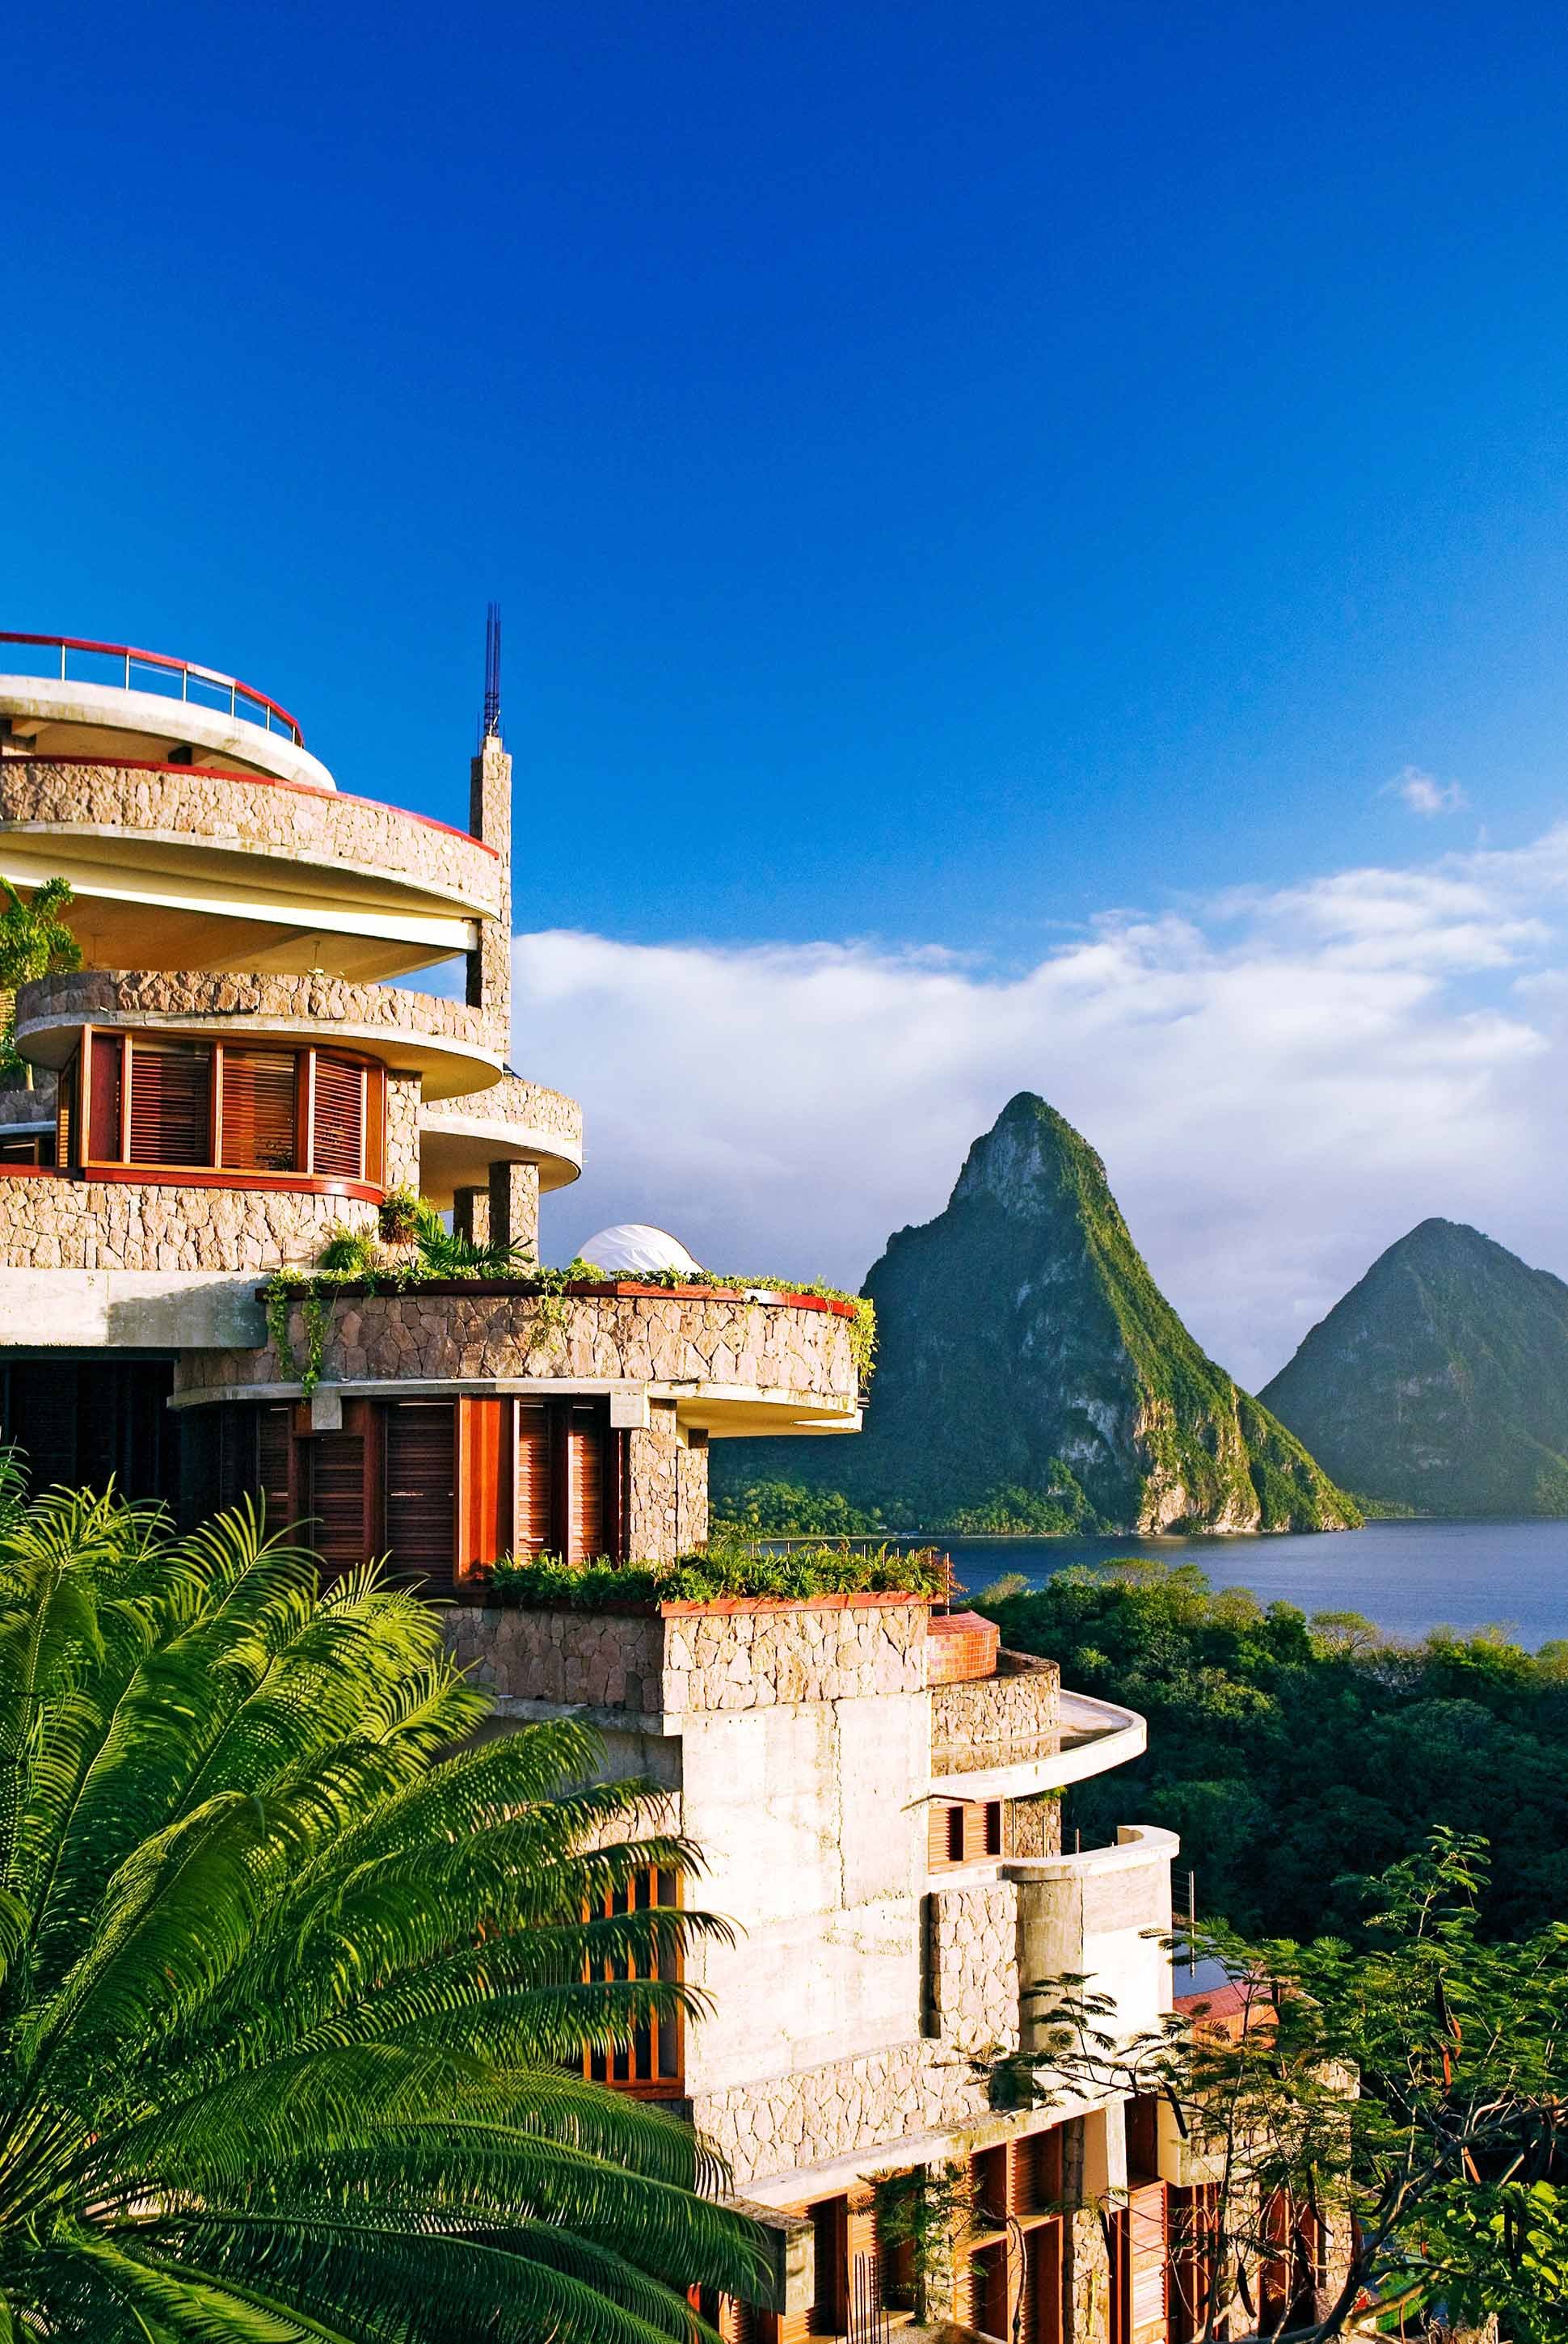 Hôtel de luxe Jade Mountain resort 5 étoiles Sainte-Lucie caraïbes vue de l'hôtel